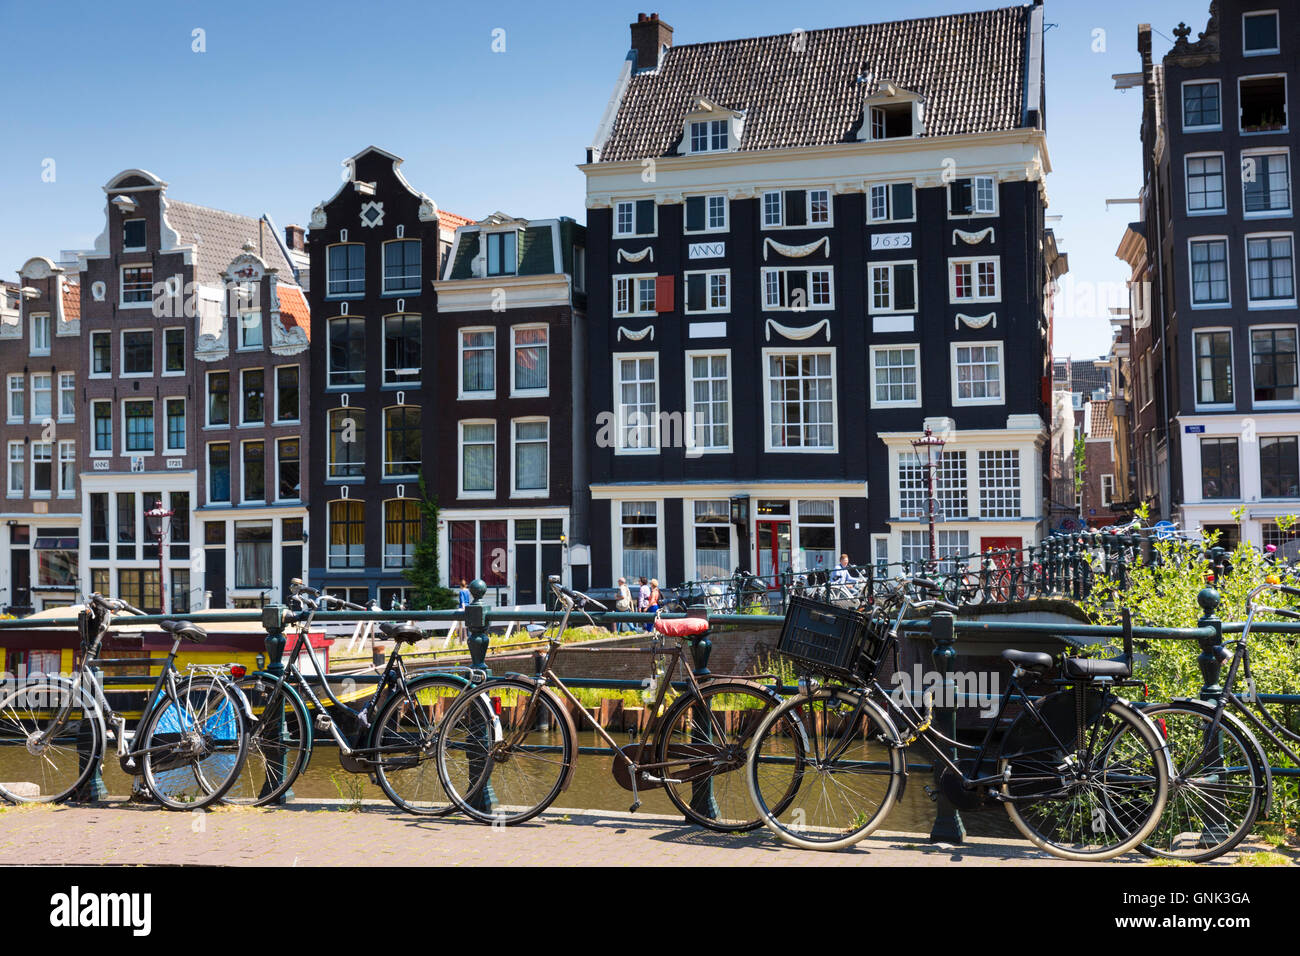 Canalside verzierte Giebelhäuser - holländische Giebel- und Fahrräder im Grachtenviertel in Jordaan, Amsterdam Stockfoto